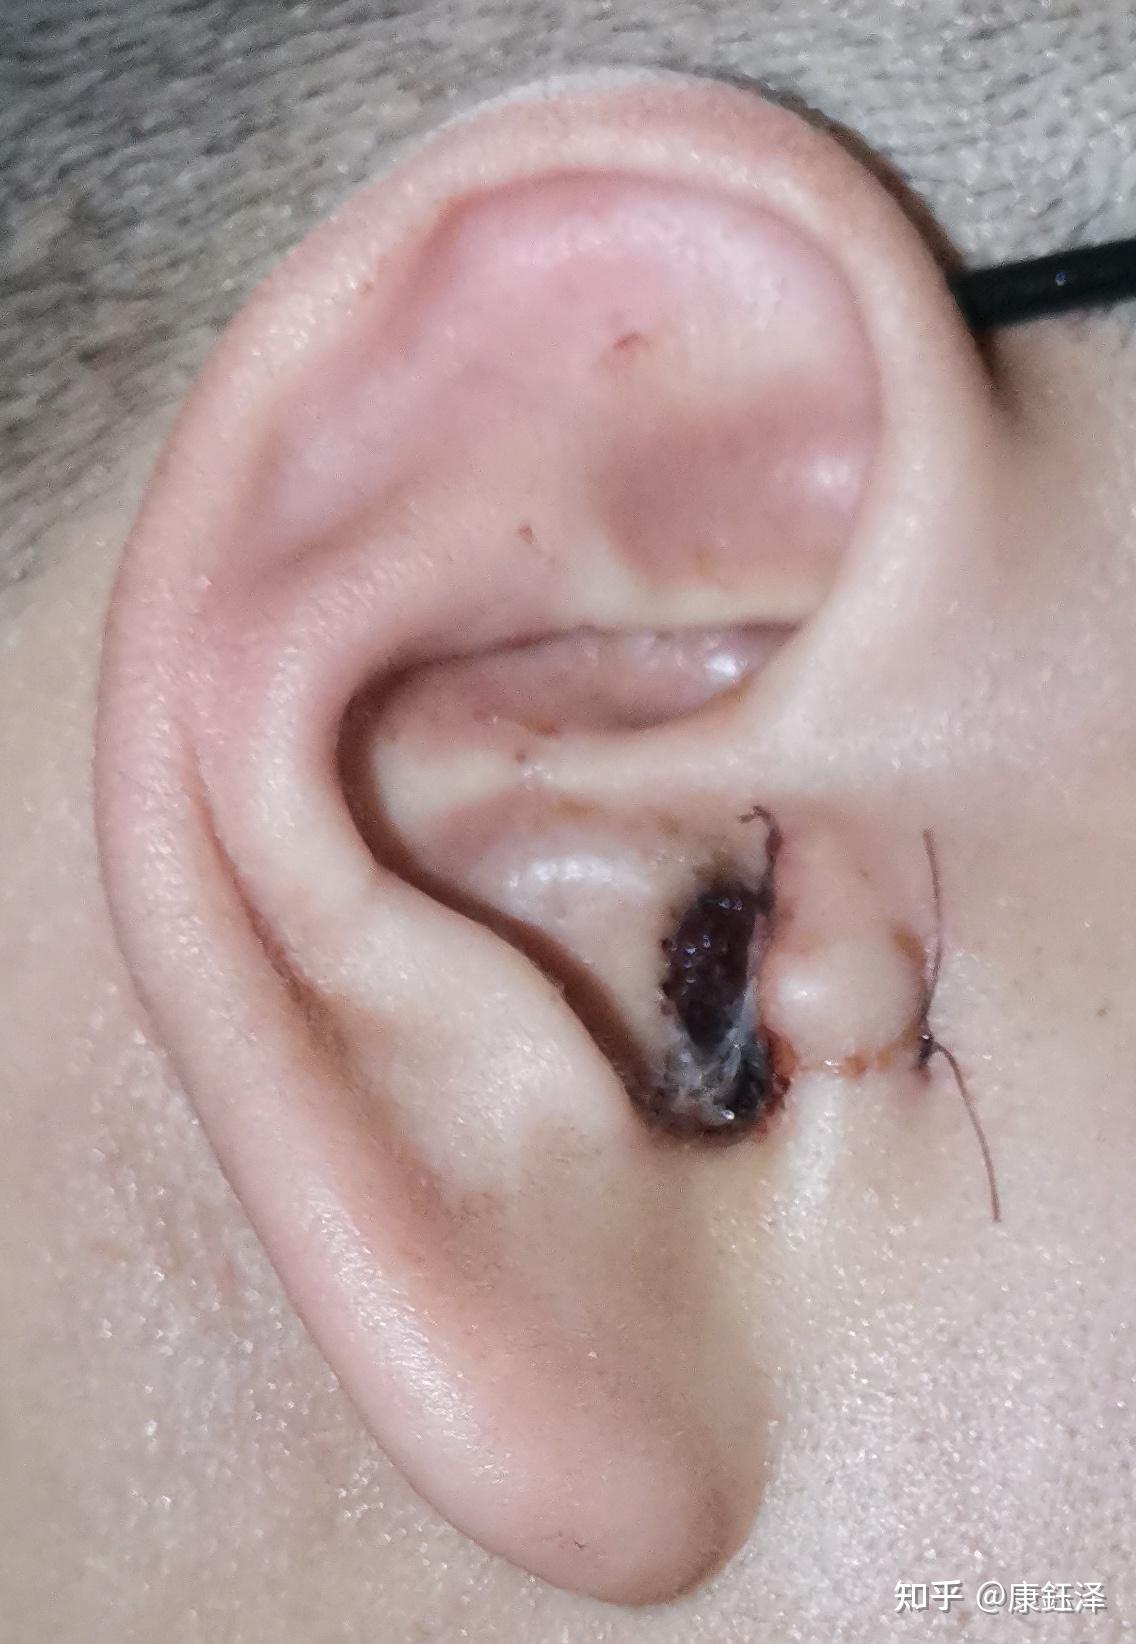 右耳朵鼓膜穿孔15年,终于决定手术修补耳膜了